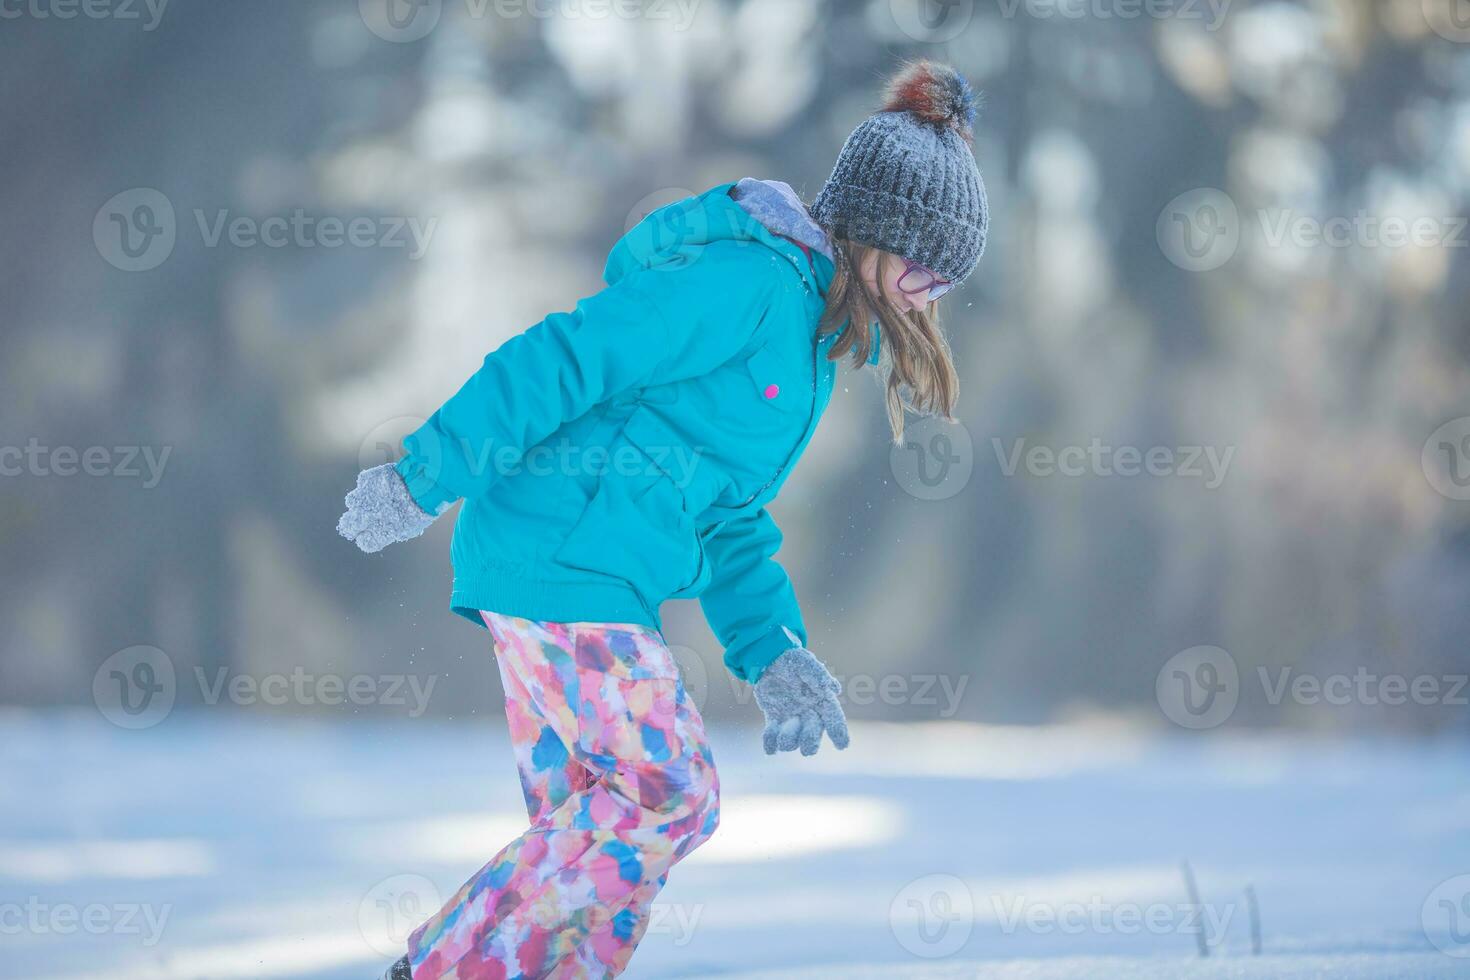 contento joven preadolescente niña en calentar ropa jugando con nieve foto